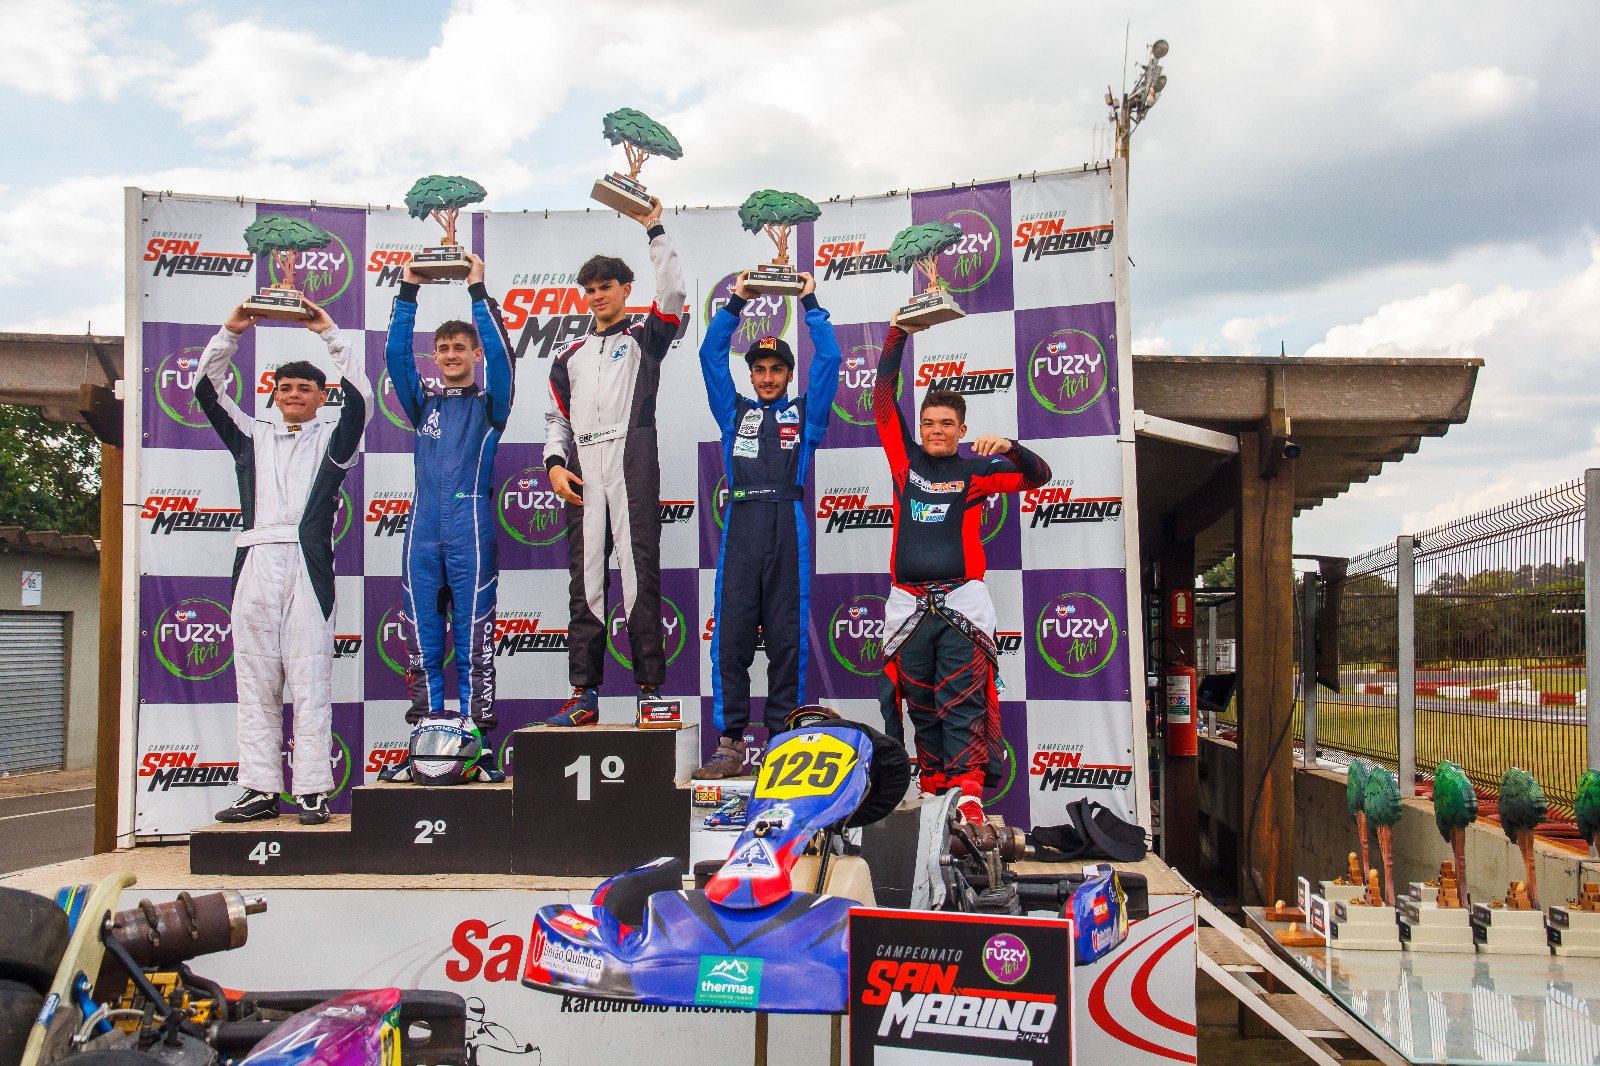 Piloto poços-caldense assegura 3ª posição no Campeonato San Marino de Kart